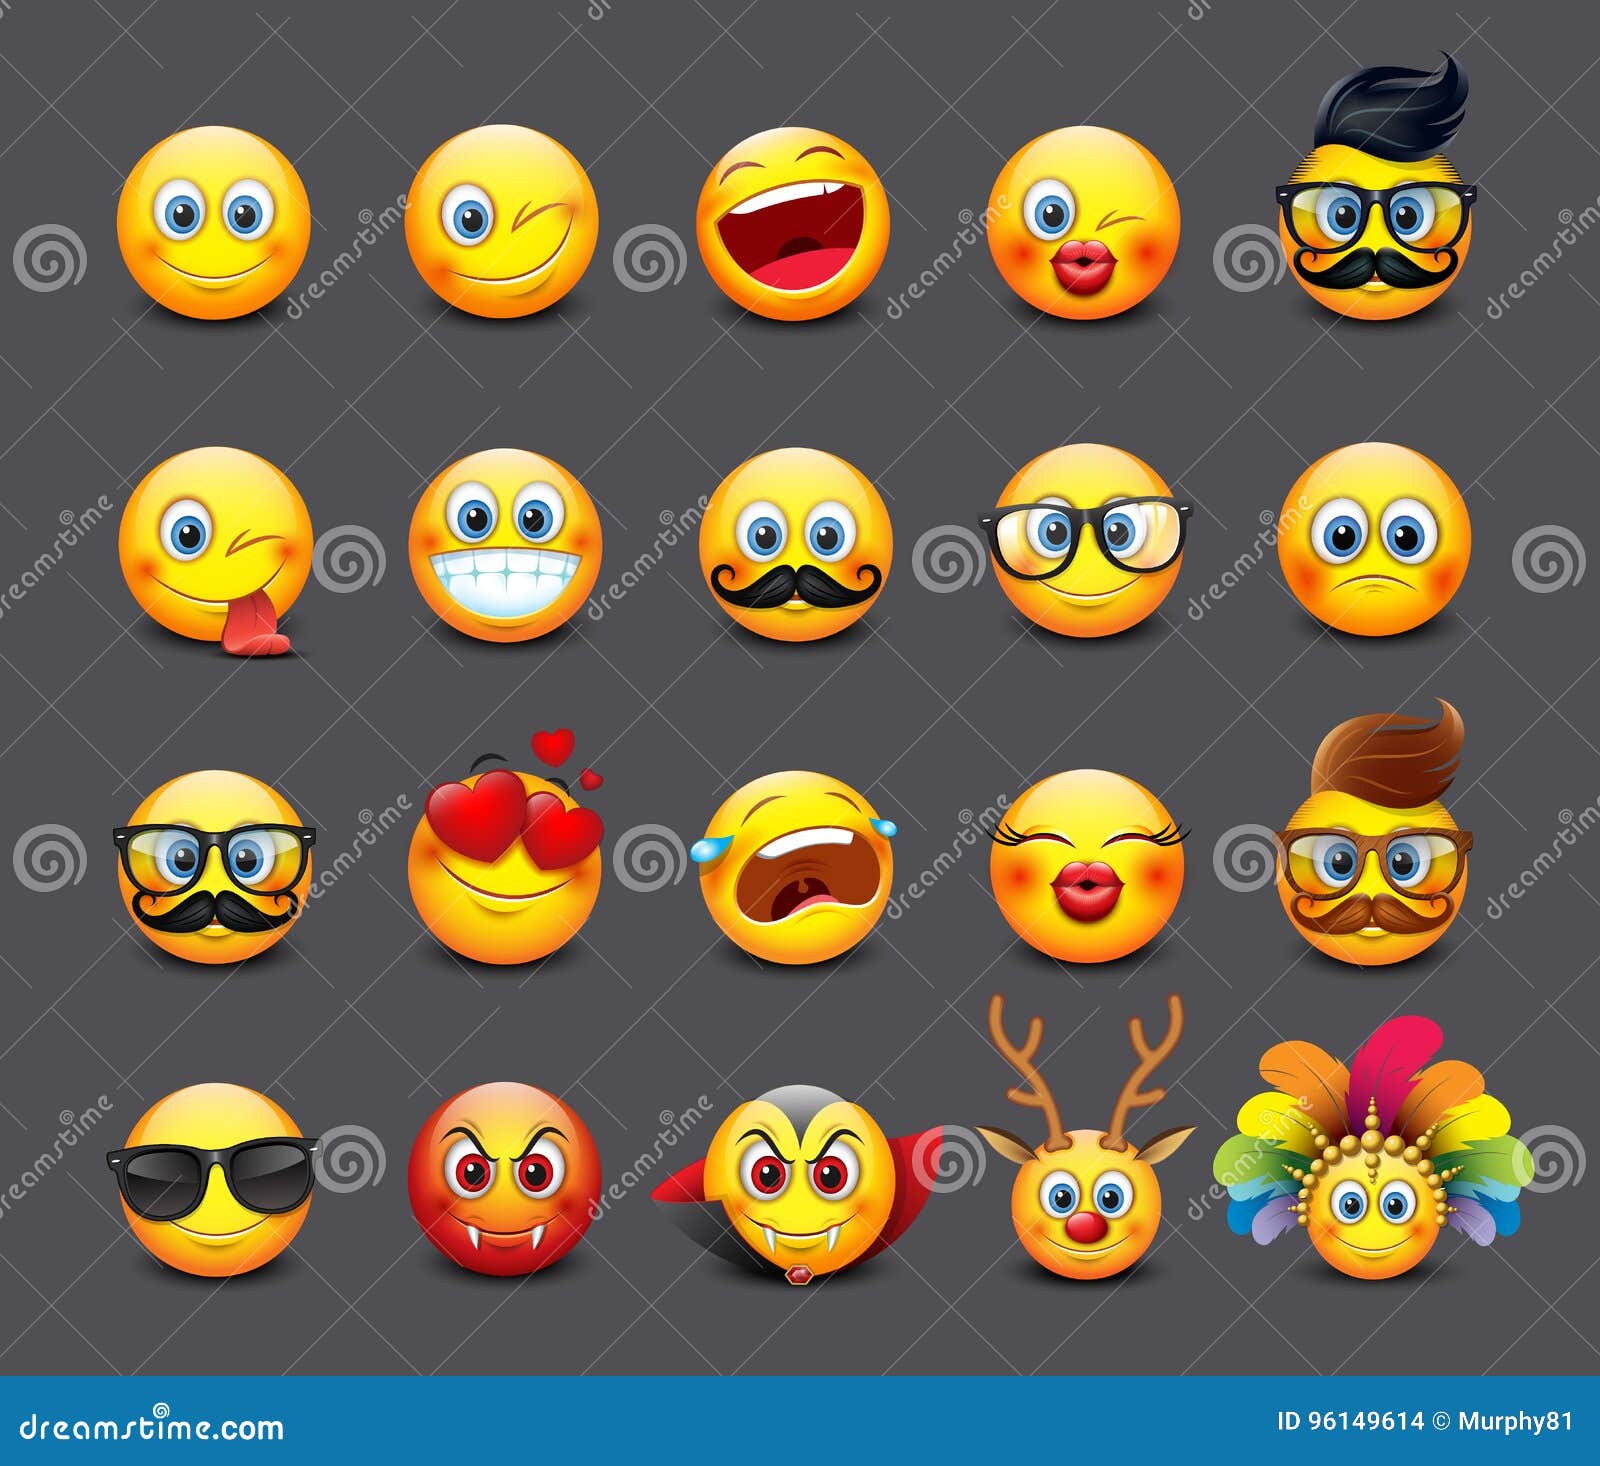 cute emoticons set, emoji - 